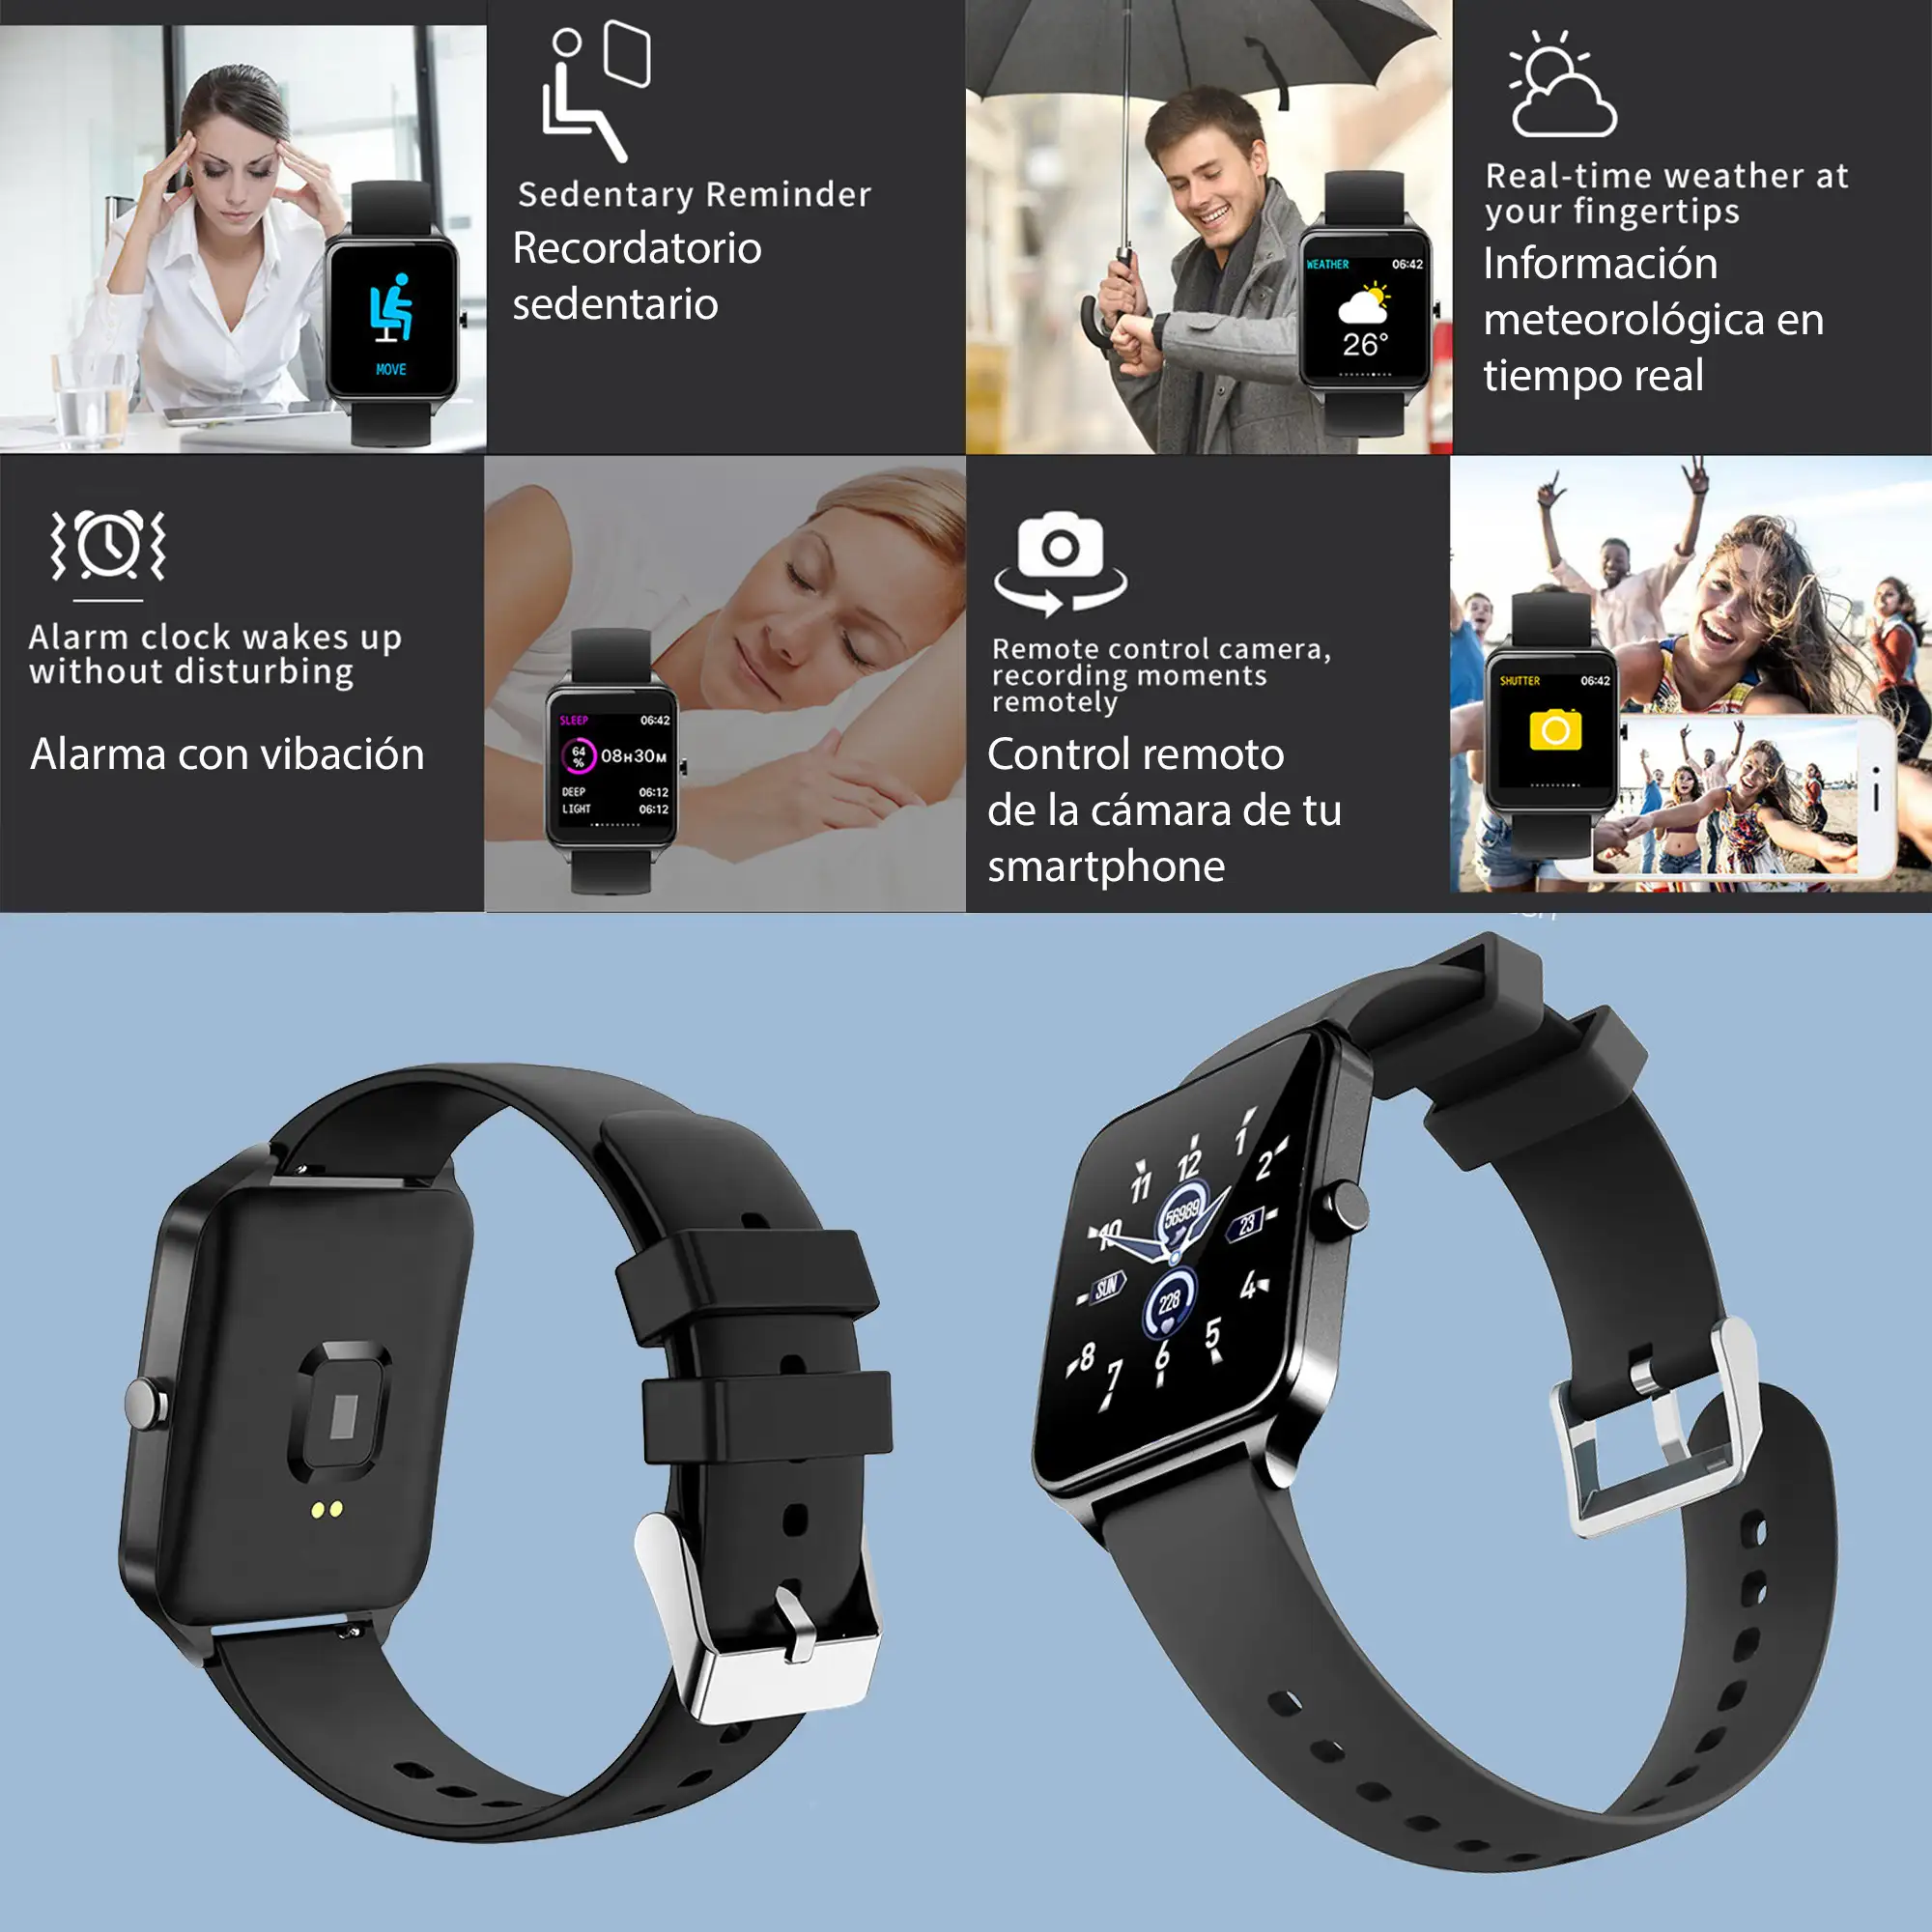 Smartwatch B20 con 8 modos deportivos, oxígeno en sangre, pulso, notificaciones iOS y Android